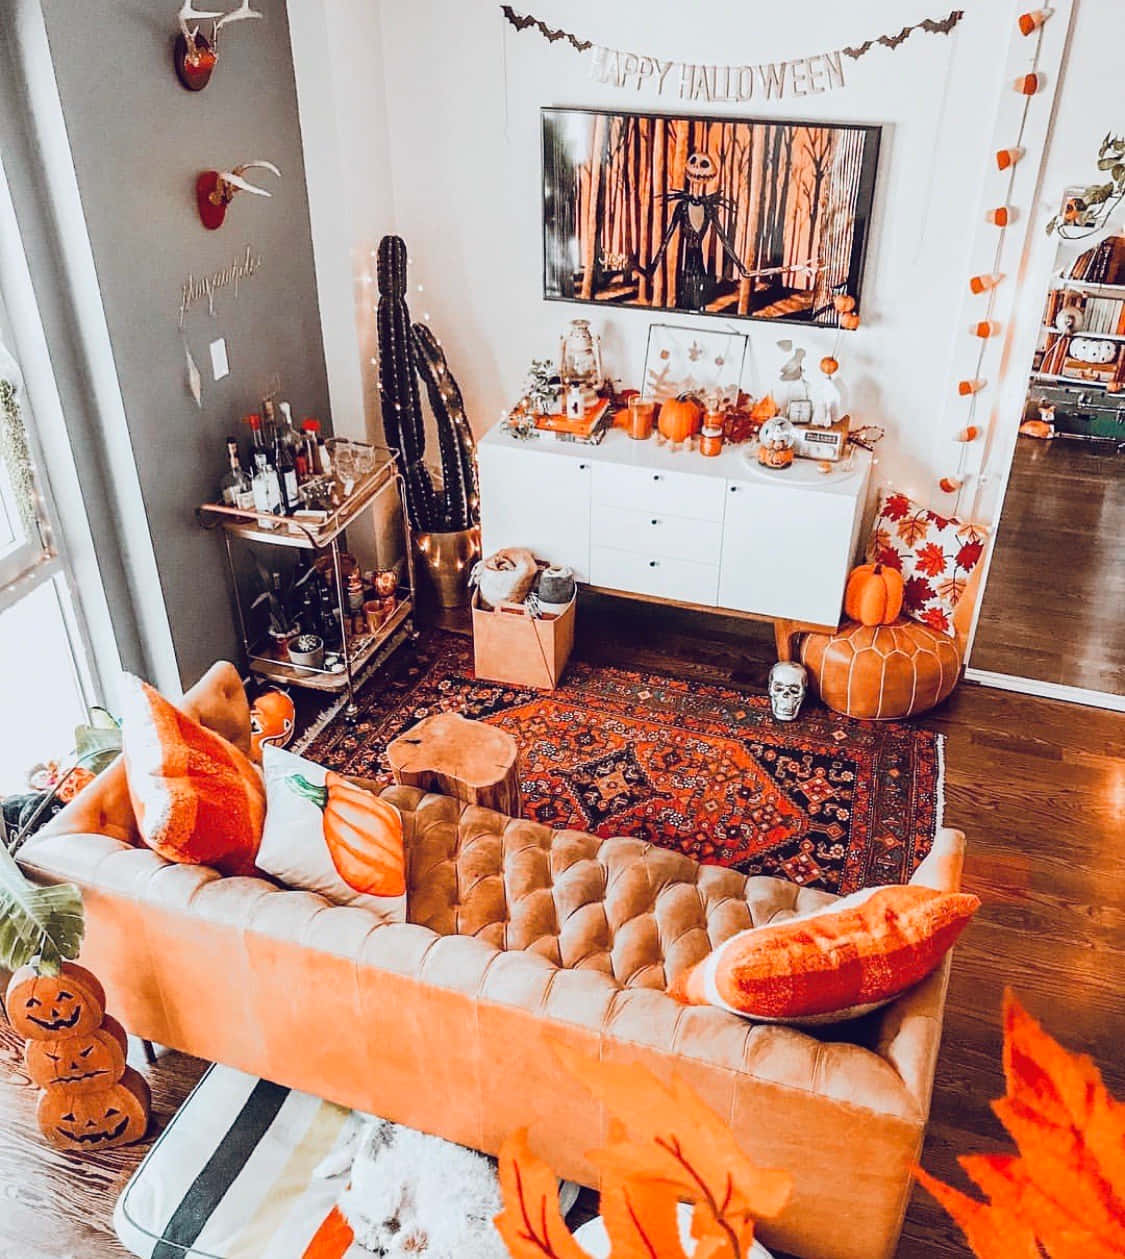 Einwohnzimmer, Das Für Halloween Dekoriert Ist, Mit Orangefarbenen Kürbissen Und Orangefarbenen Dekorationen.